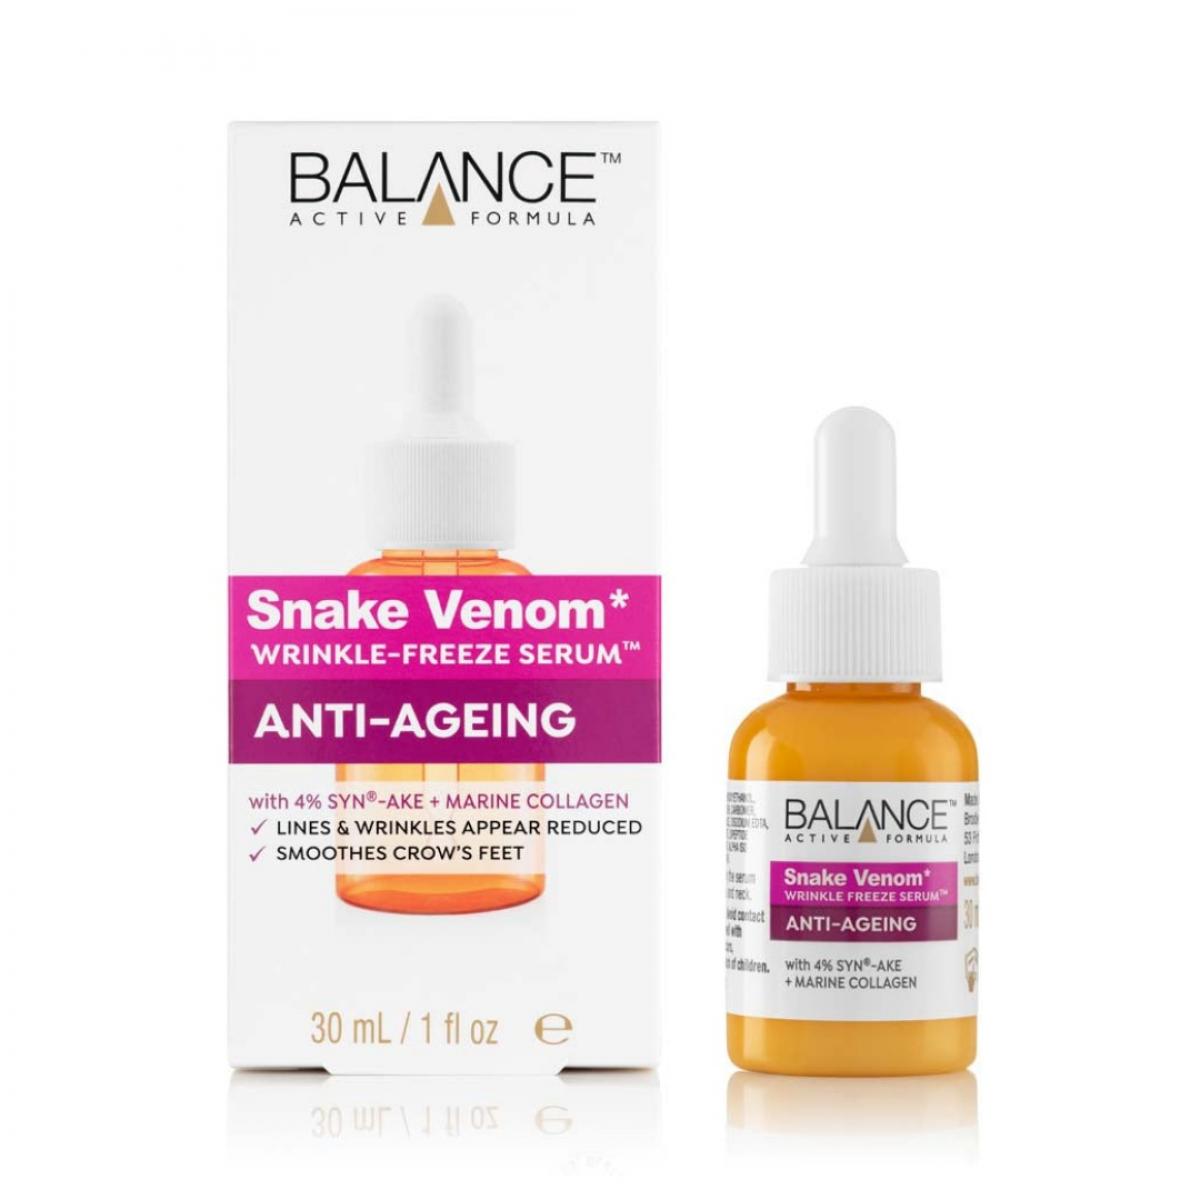 سرم جوانساز و ضدچروک مدل Snake Venom - Skincare Snake Venom Wrinkle-Freeze Serum